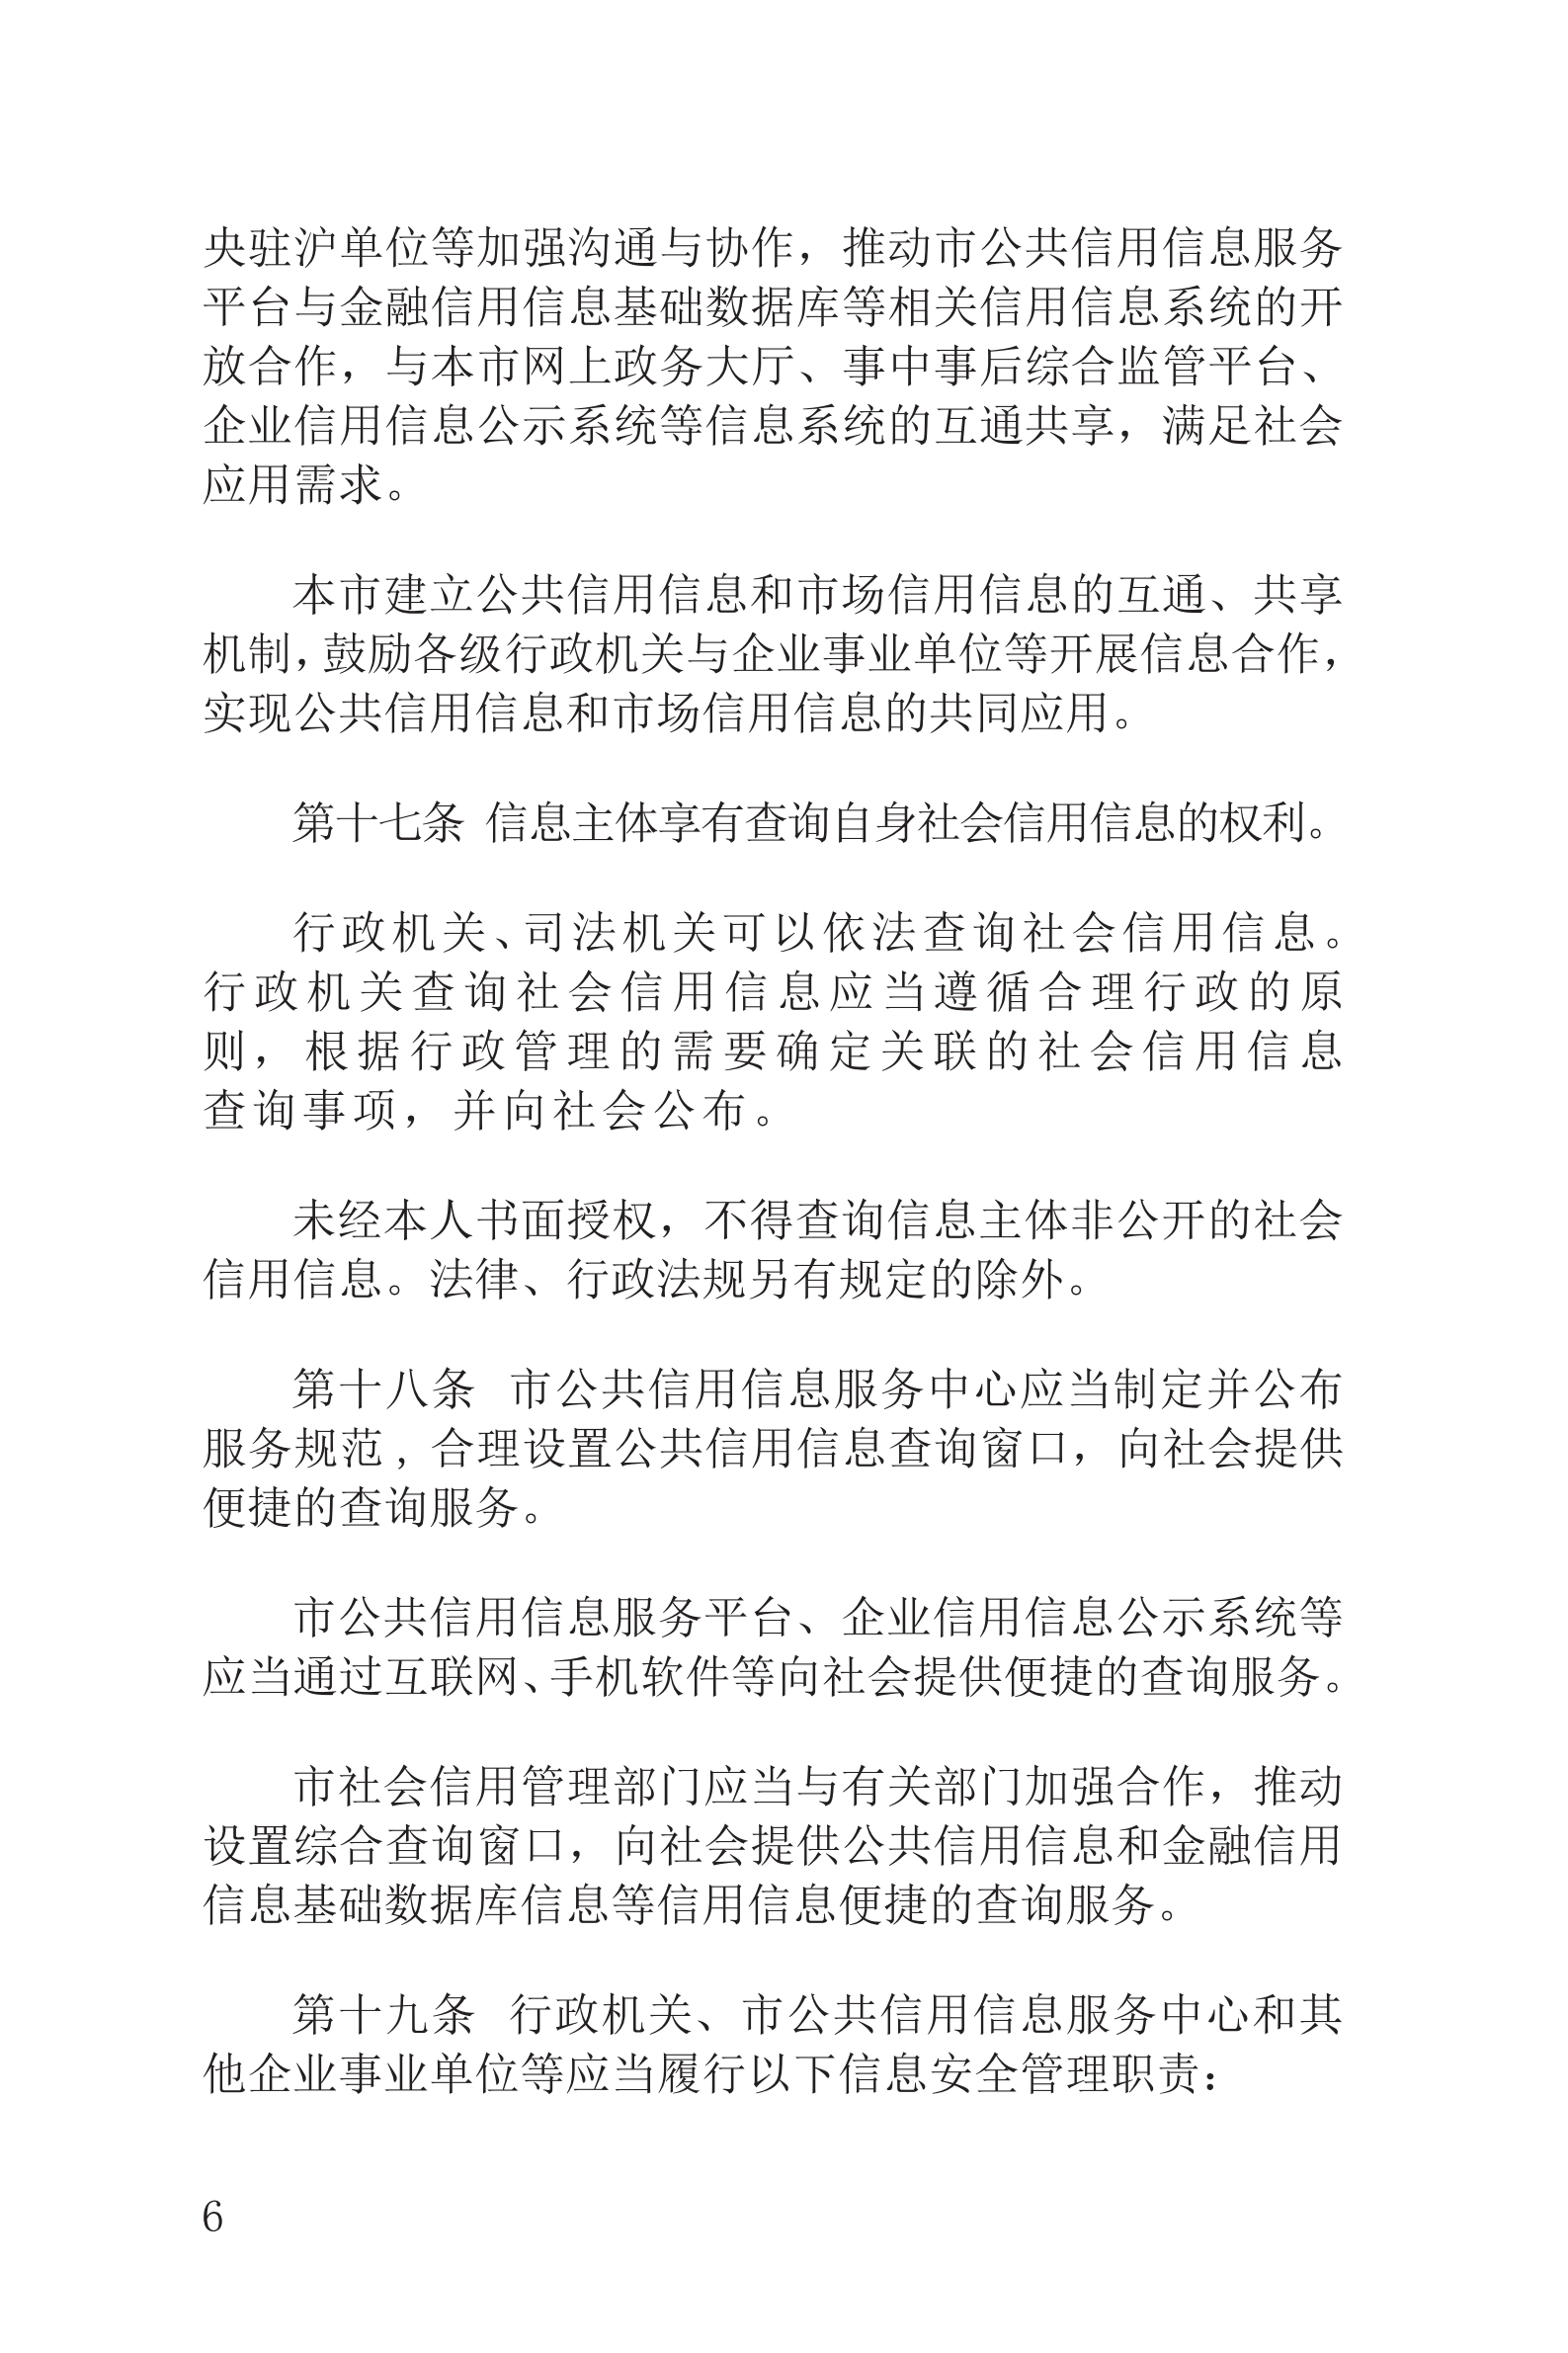 上海市社会信用条例_07.png